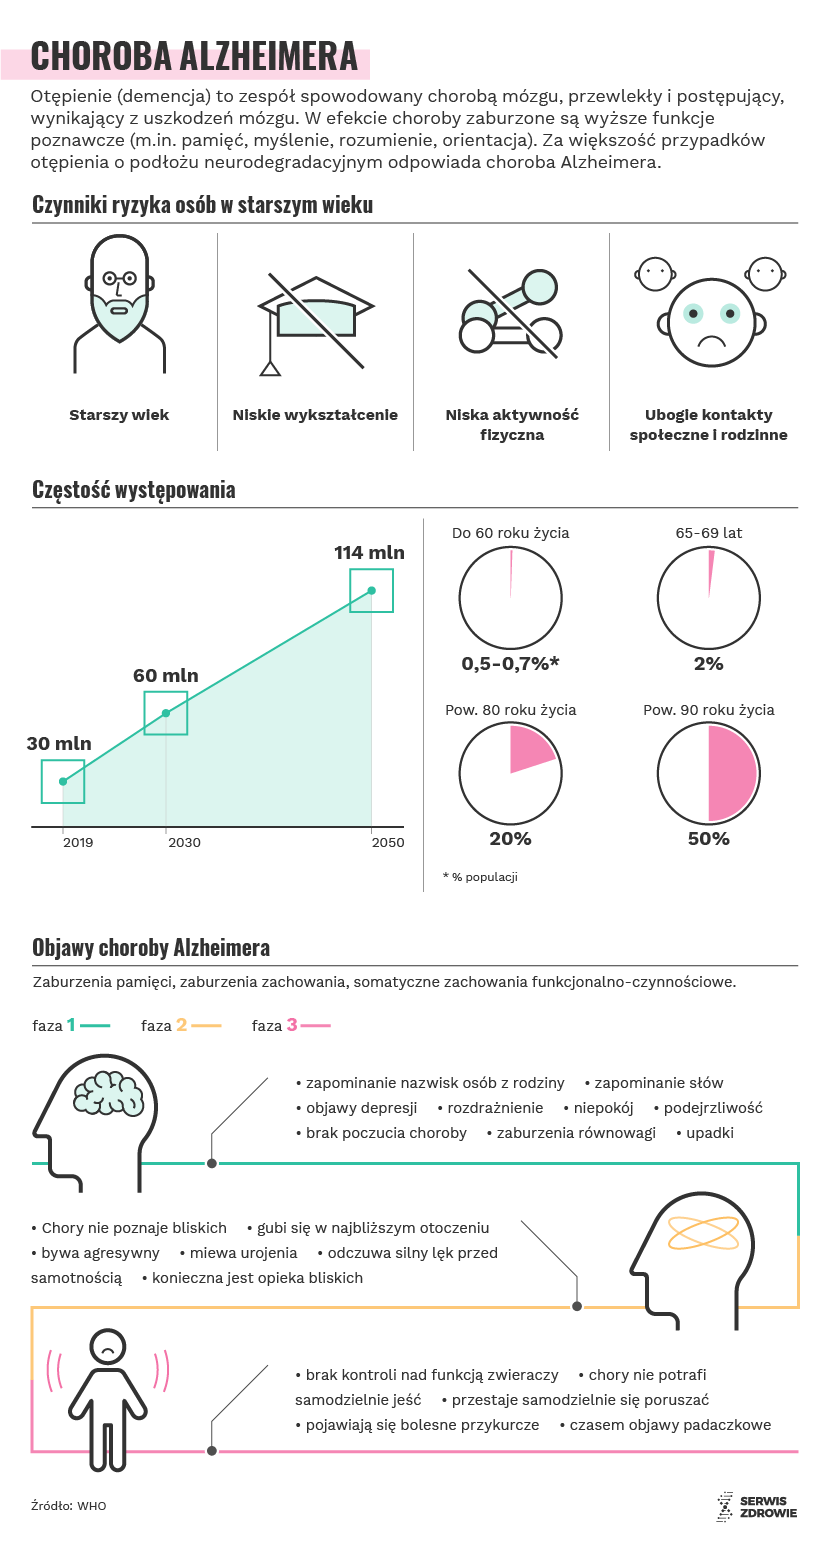 Infografika PAP/Serwis Zdrowie/A. Zajkowska